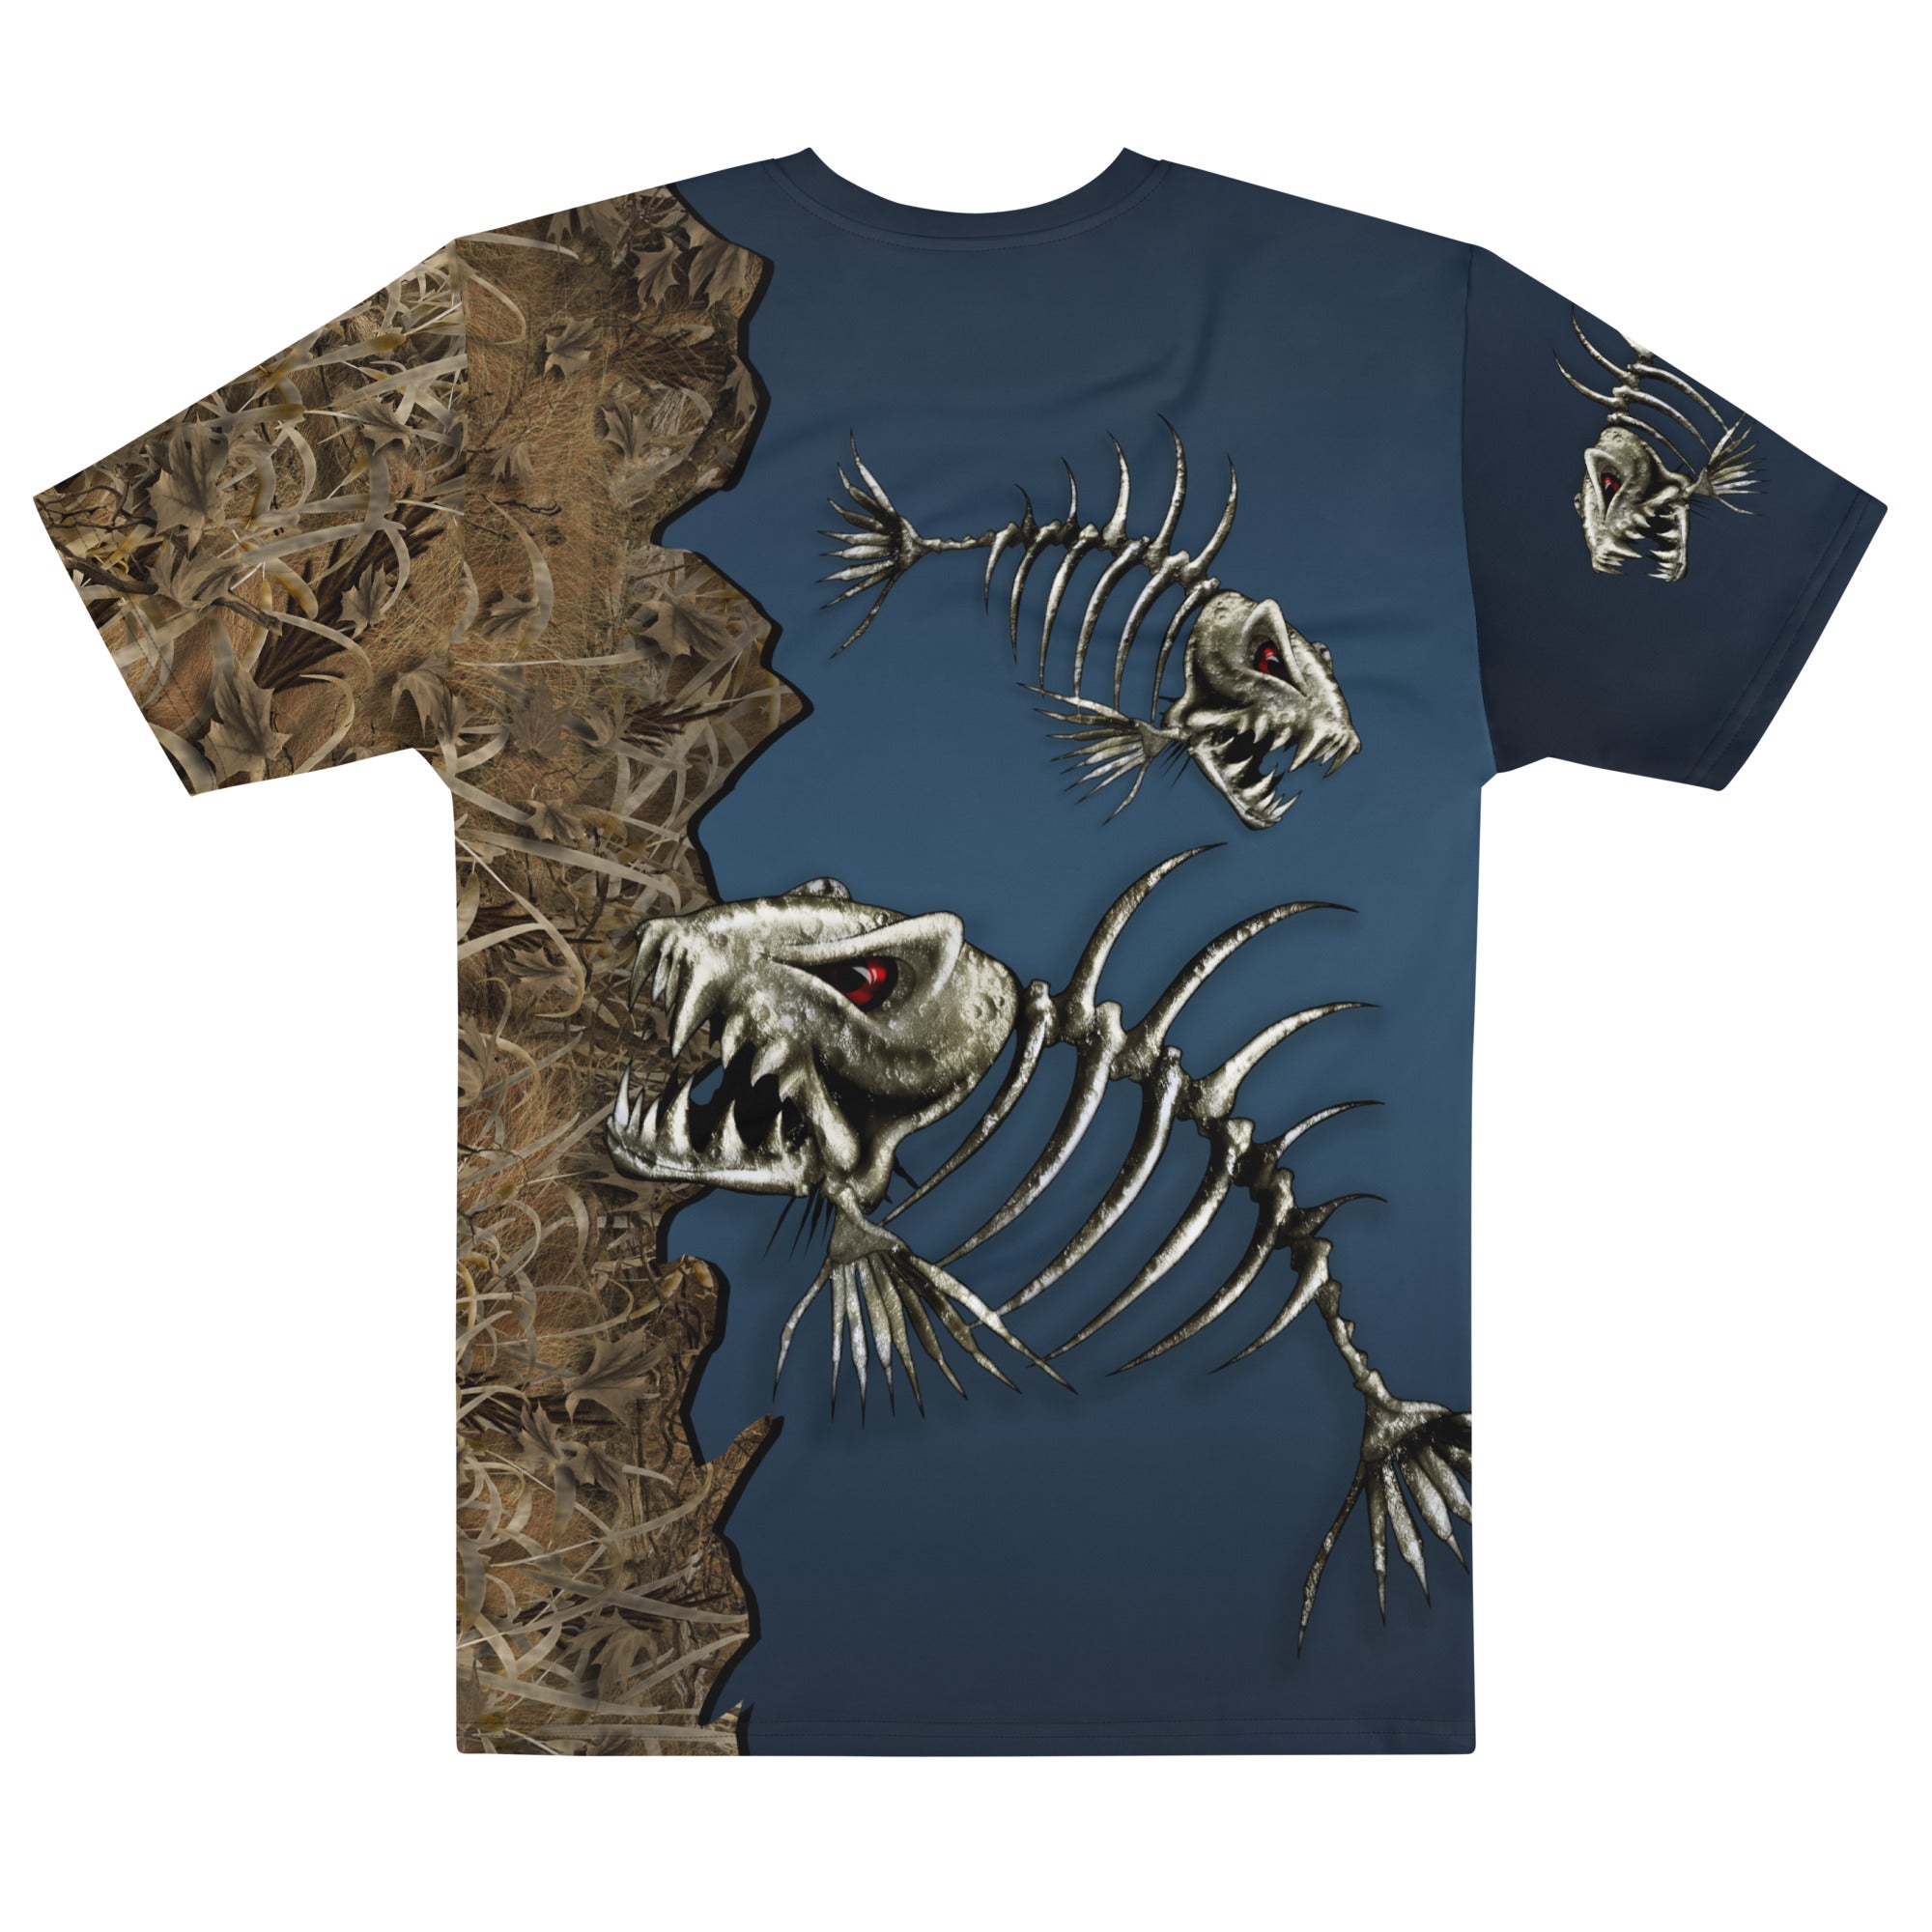 Knochenfisch 3D-Druckmenschen T-Shirt coole Sommermode Unisex Kurzarm T-Shirt Casual Tee Tops